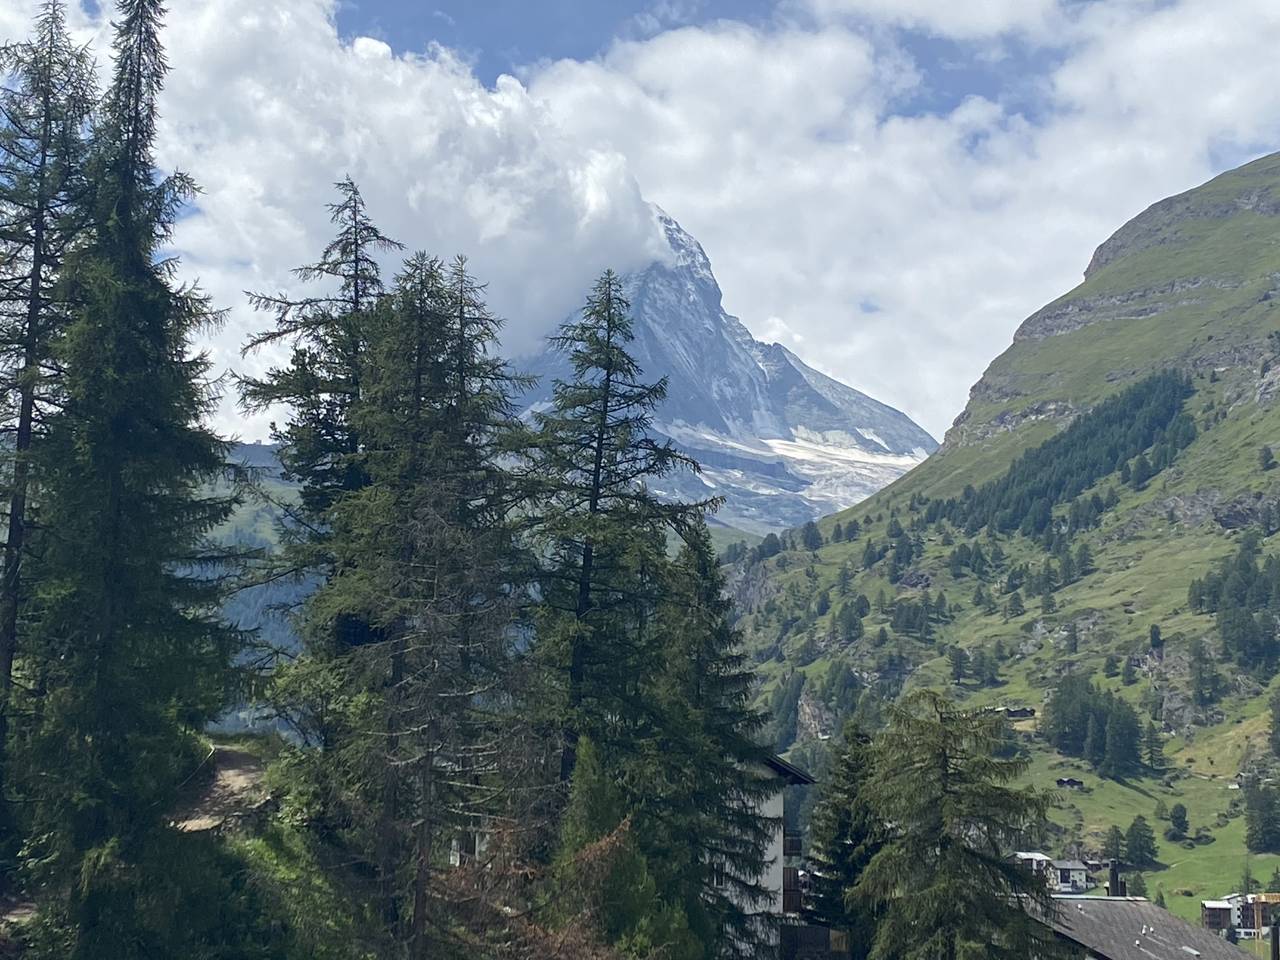 The Matterhorn in view